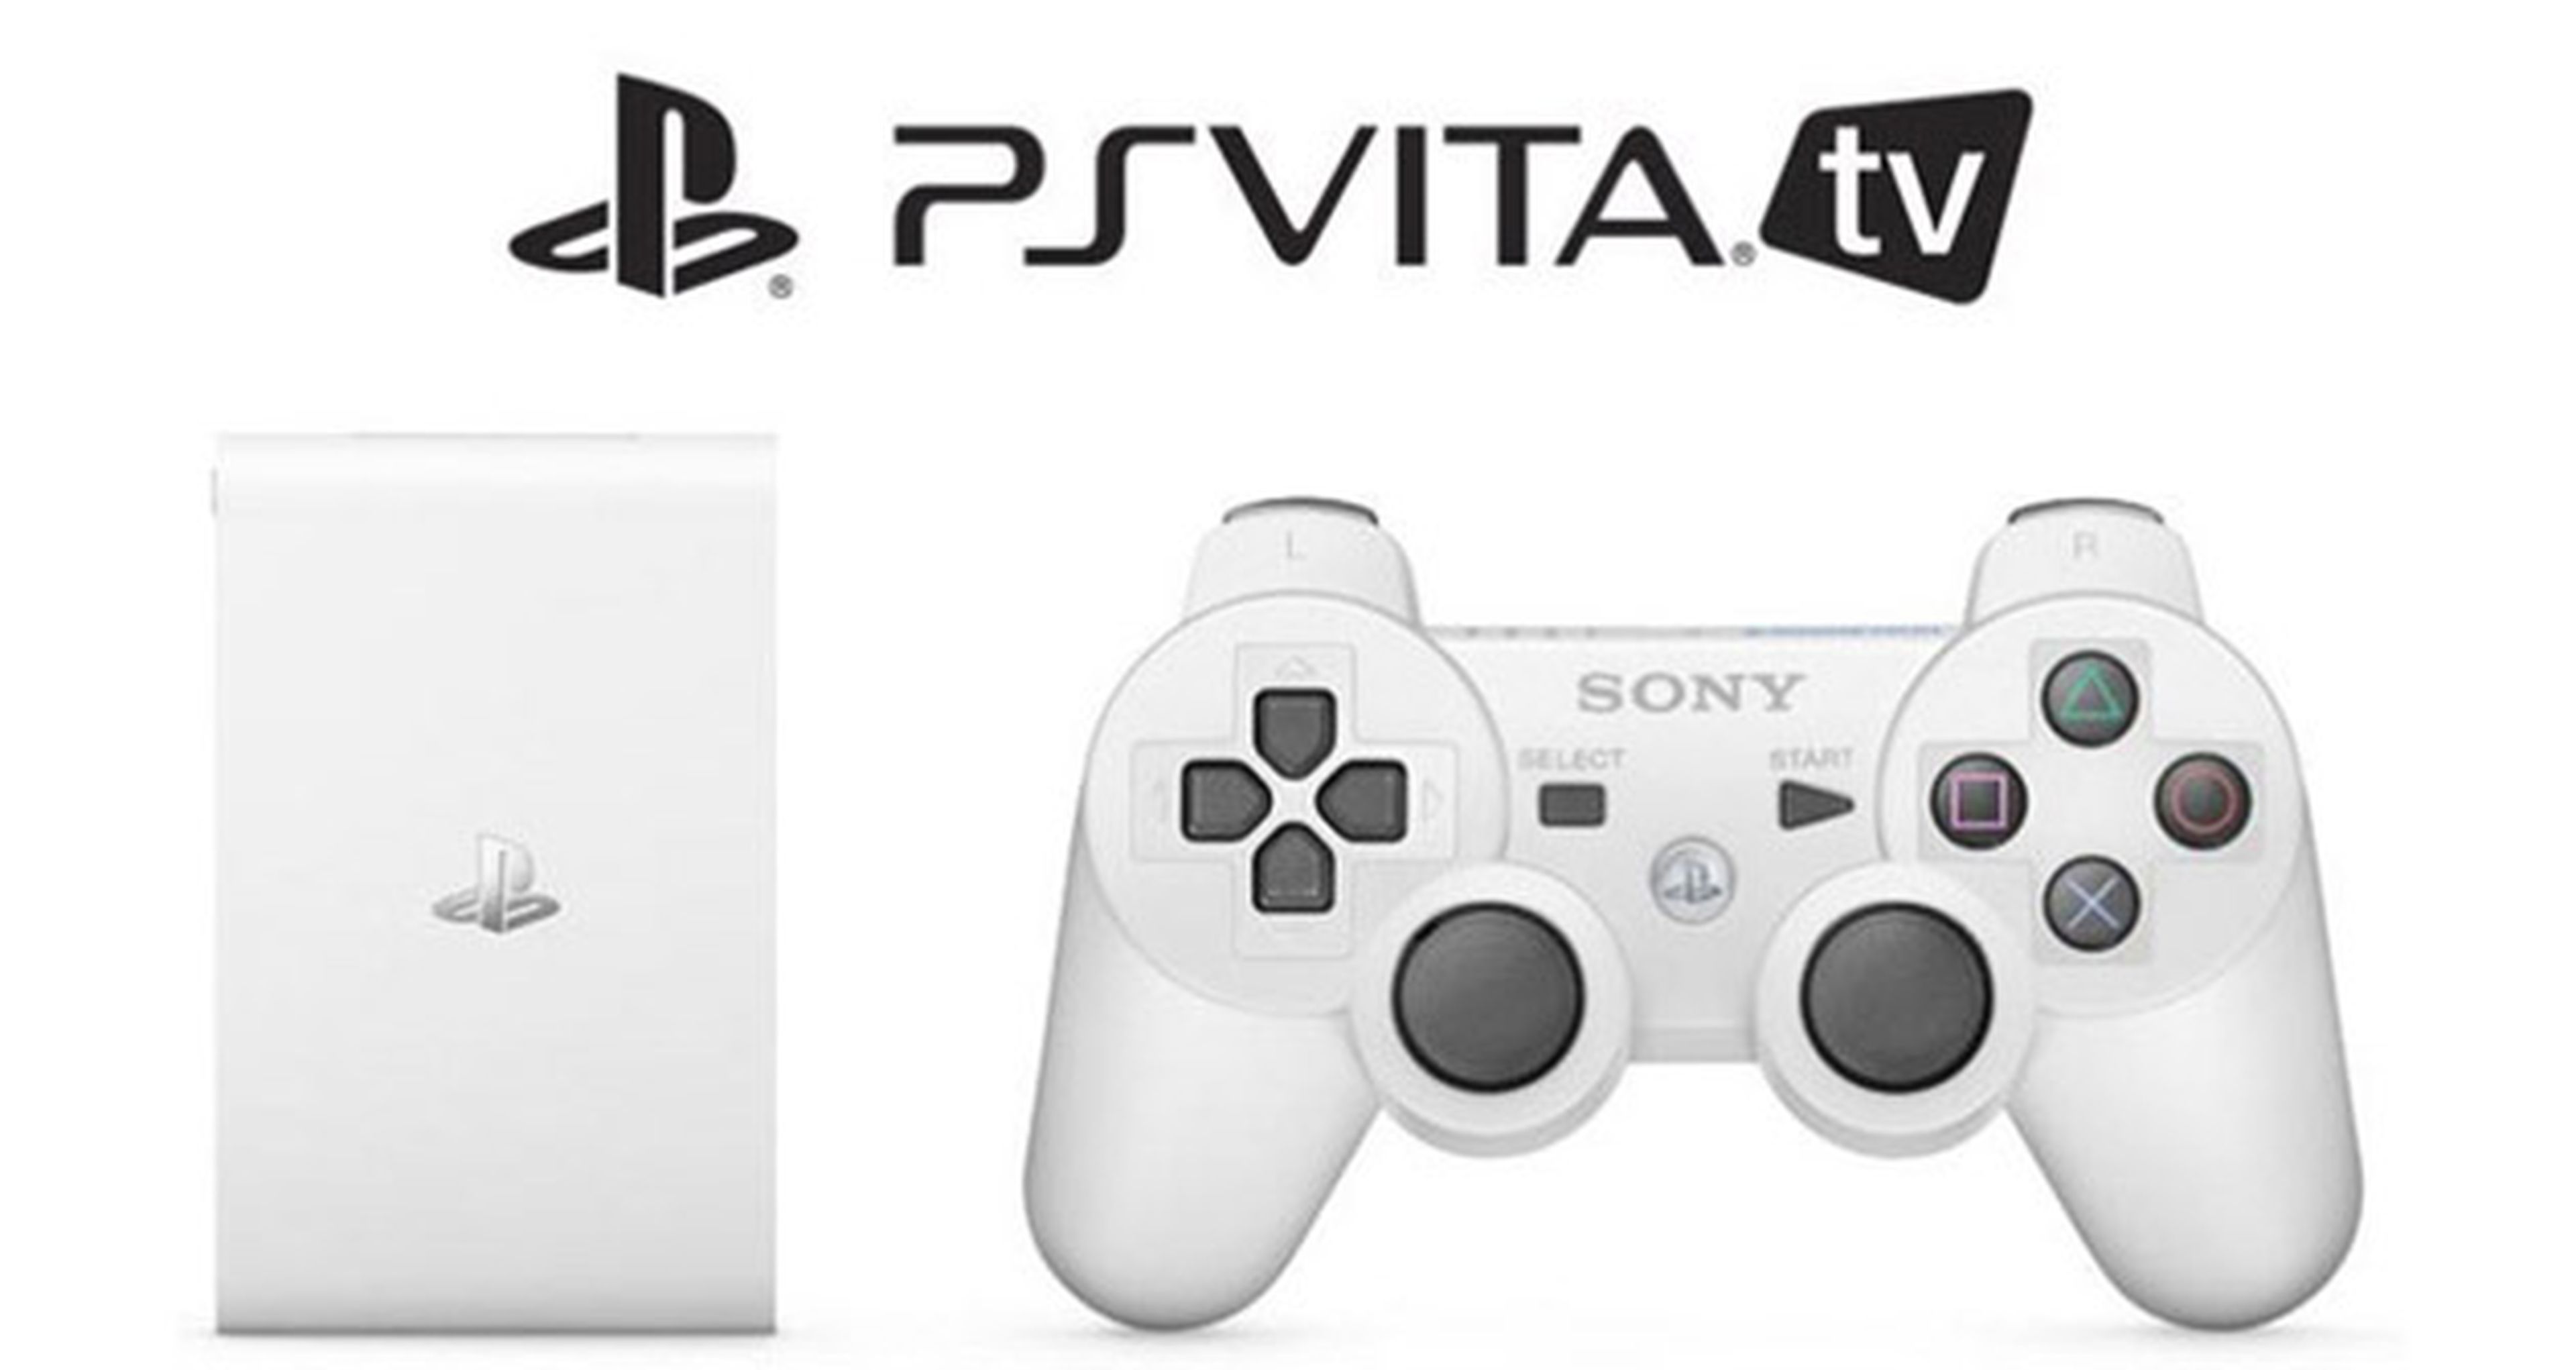 Sony habla sobre la salida de PS Vita TV en occidente